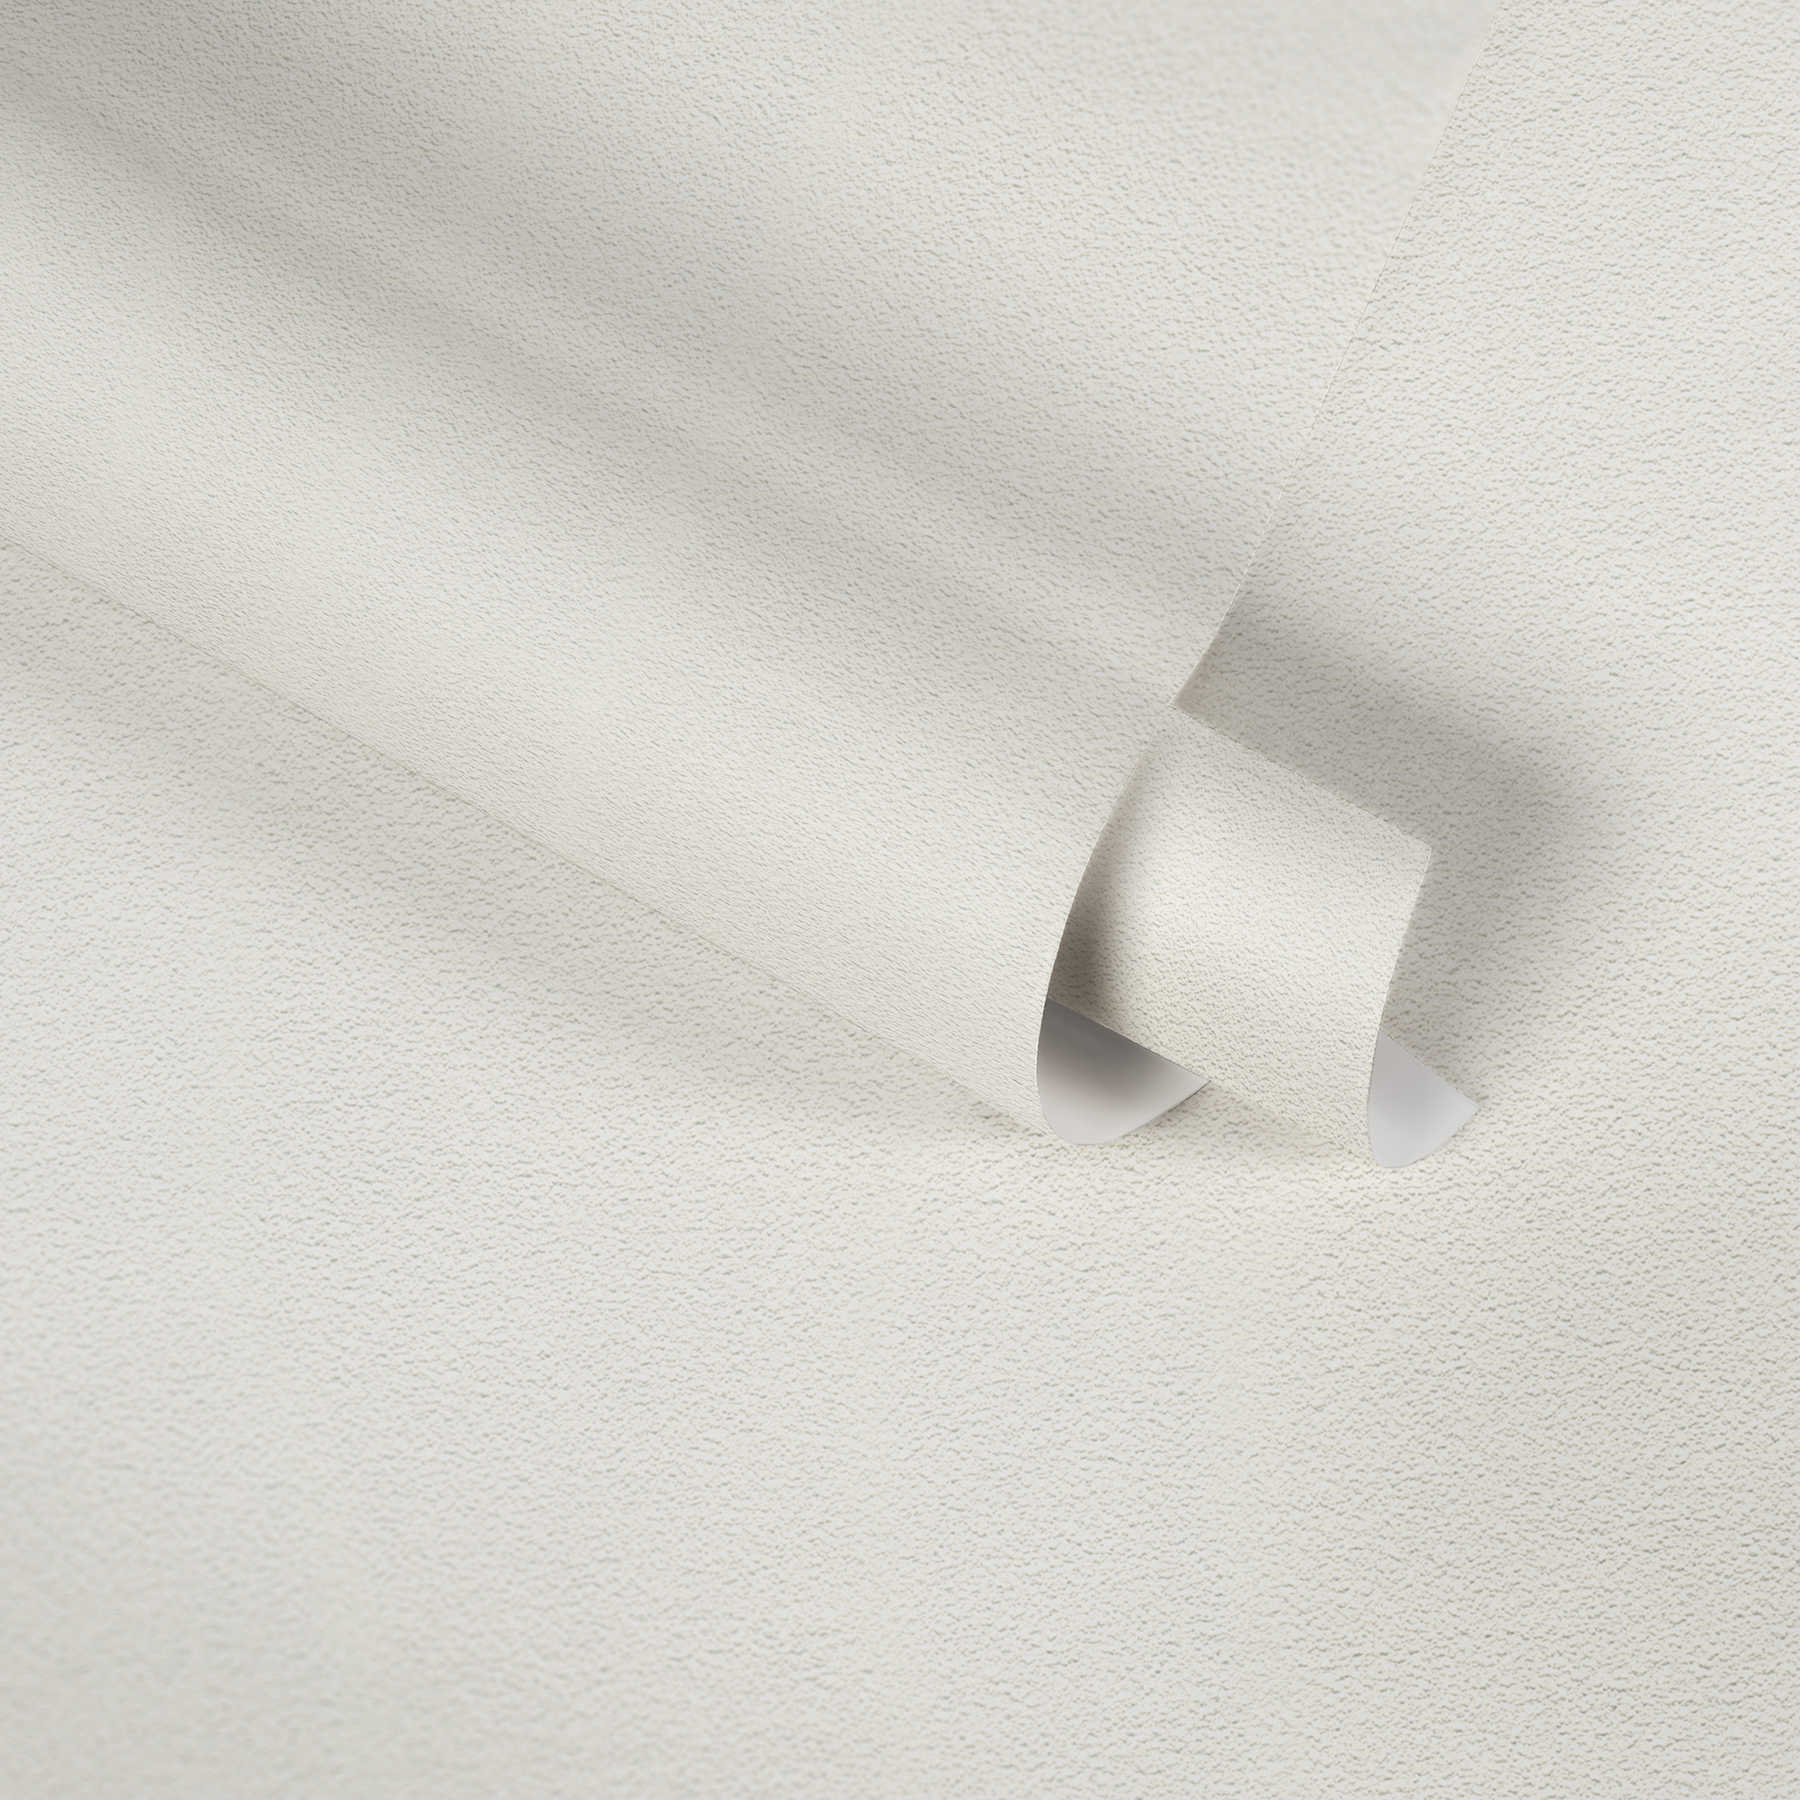             Effen wit behang met tweedimensionale schuimstructuur
        